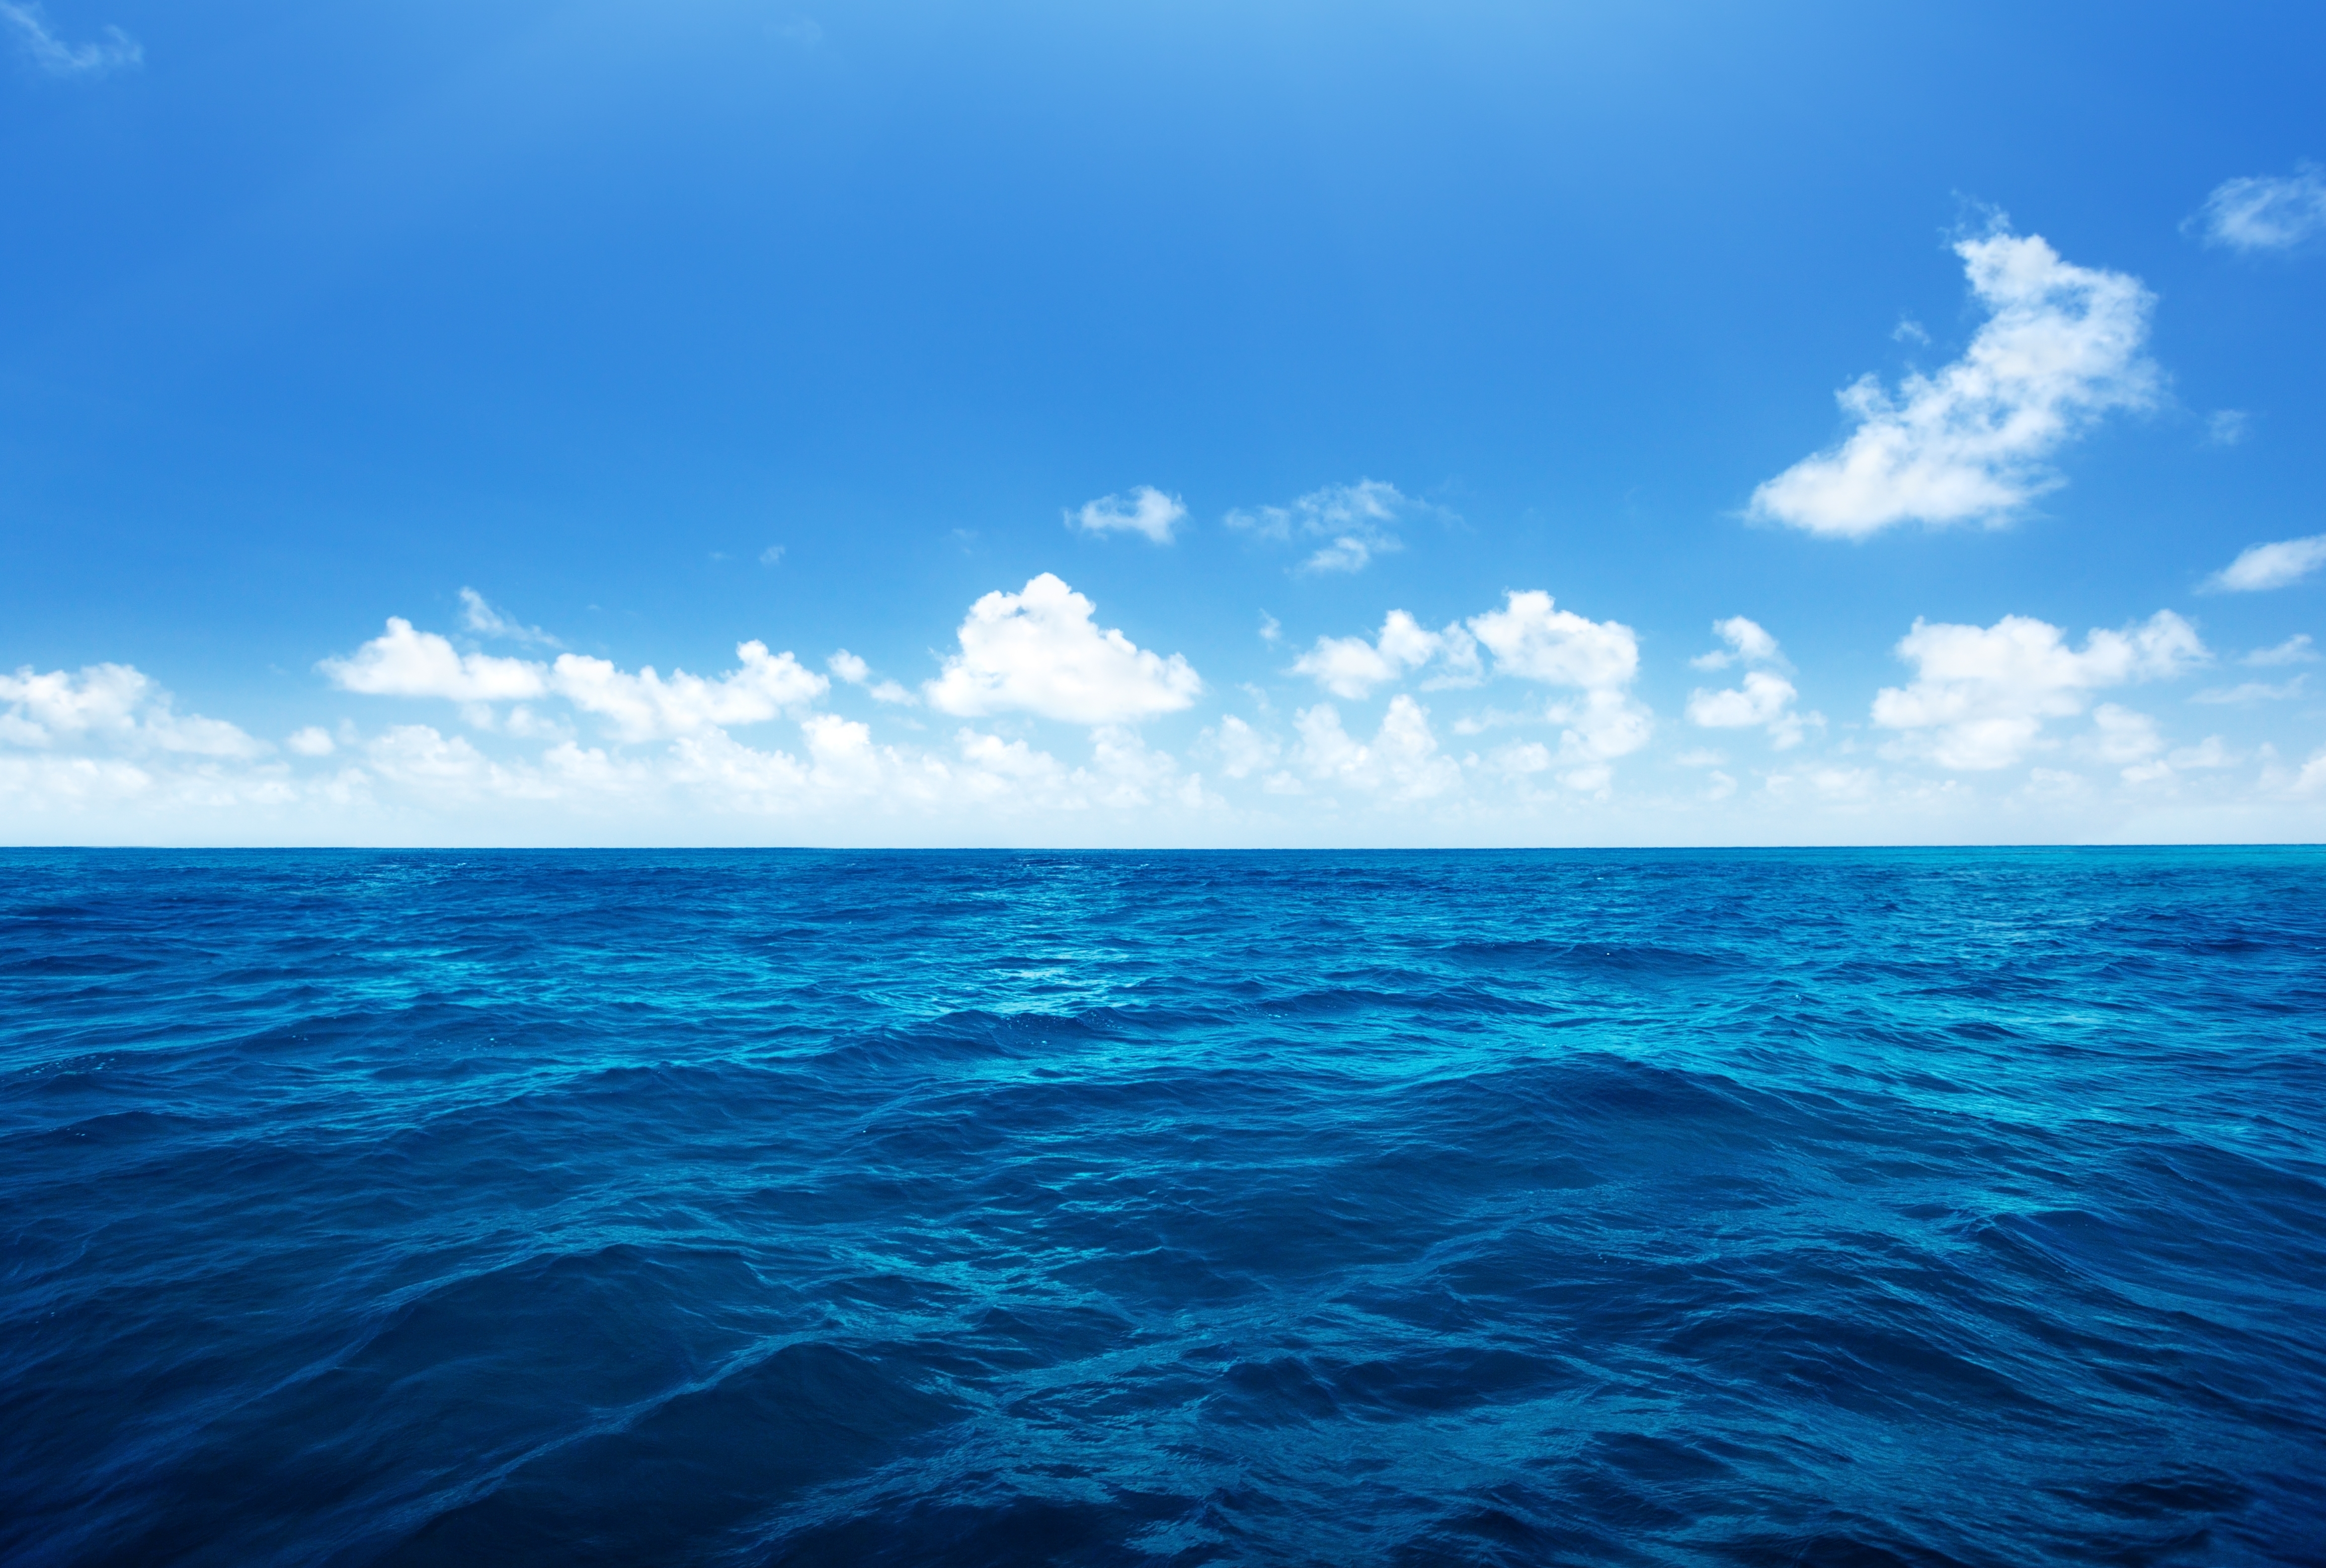 Hình nền đại dương xanh sẽ khiến bạn choáng ngợp với vẻ đẹp của bầu trời xanh và bữa tiệc màu sắc dưới biển khơi. Hãy xem nhé!